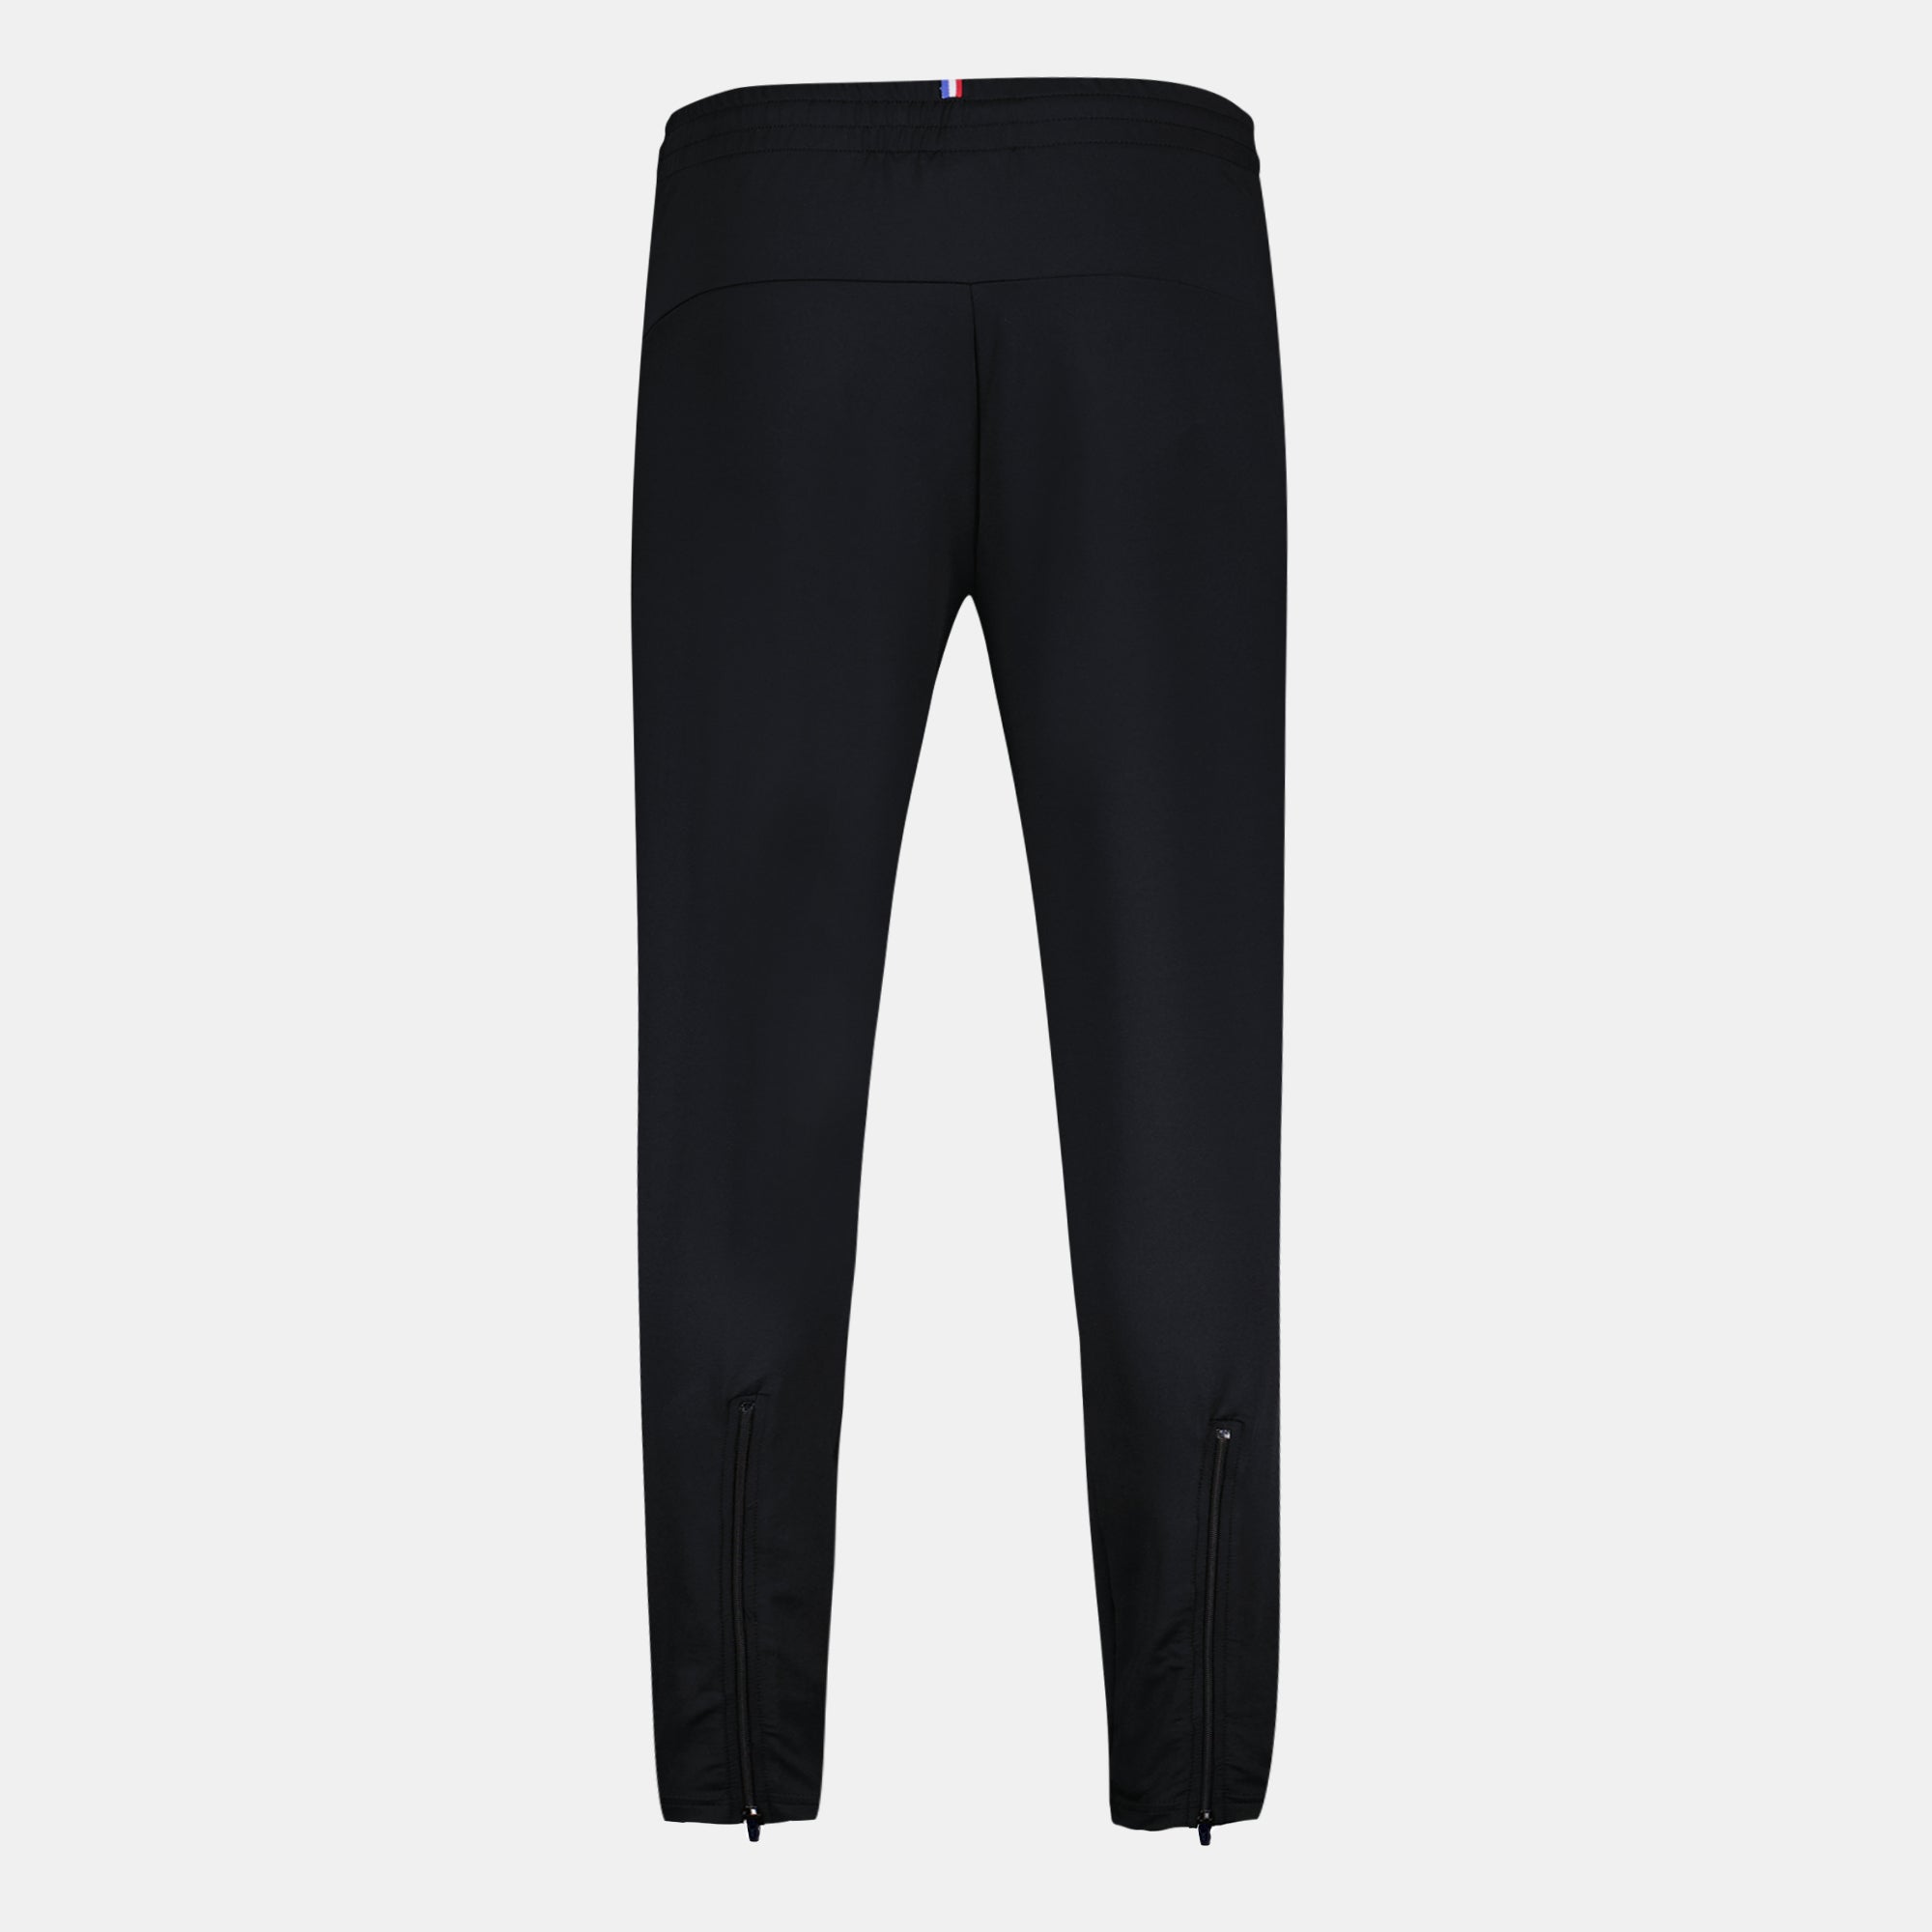 2320914-OGC NICE TRAINING Pant M black | Pantalon de sport Unisexe